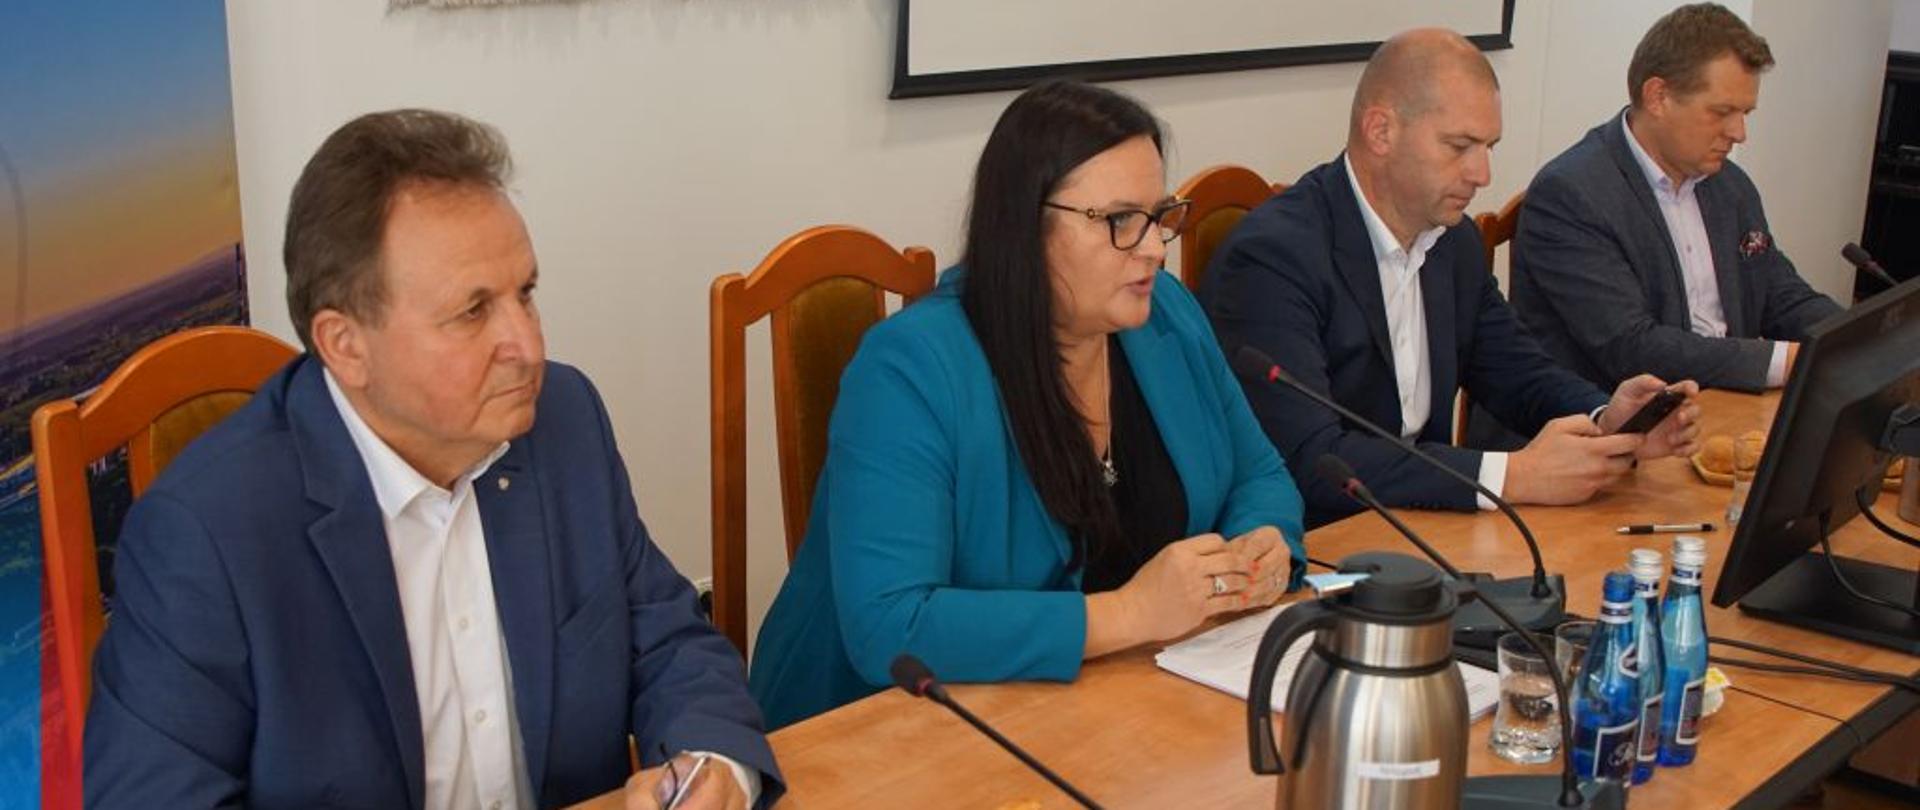 Trzech mężczyzn i wiceminister Małgorzata Jarosińska-Jedynak pomiędzy nimi siedzą przy stole. Na nim monitor, mikrofony i butelki.